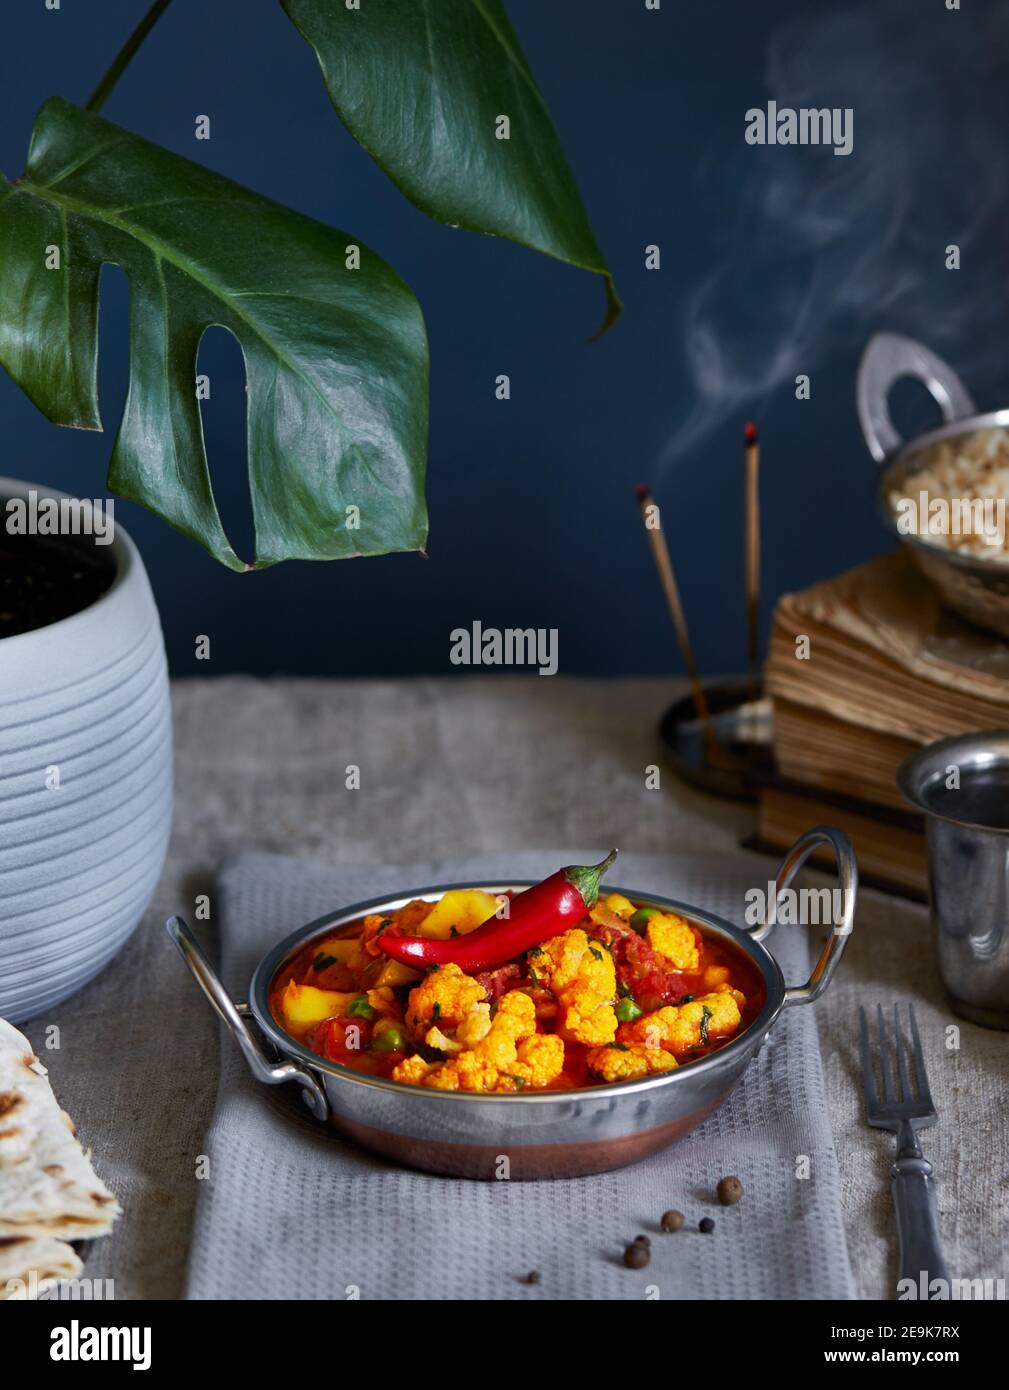 Aloo gobi cuisine traditionnelle indienne à base de chou-fleur et de pommes de terre décorée de piment rouge servi avec du riz brun, de l'eau de citron et des chapati sur la table Banque D'Images